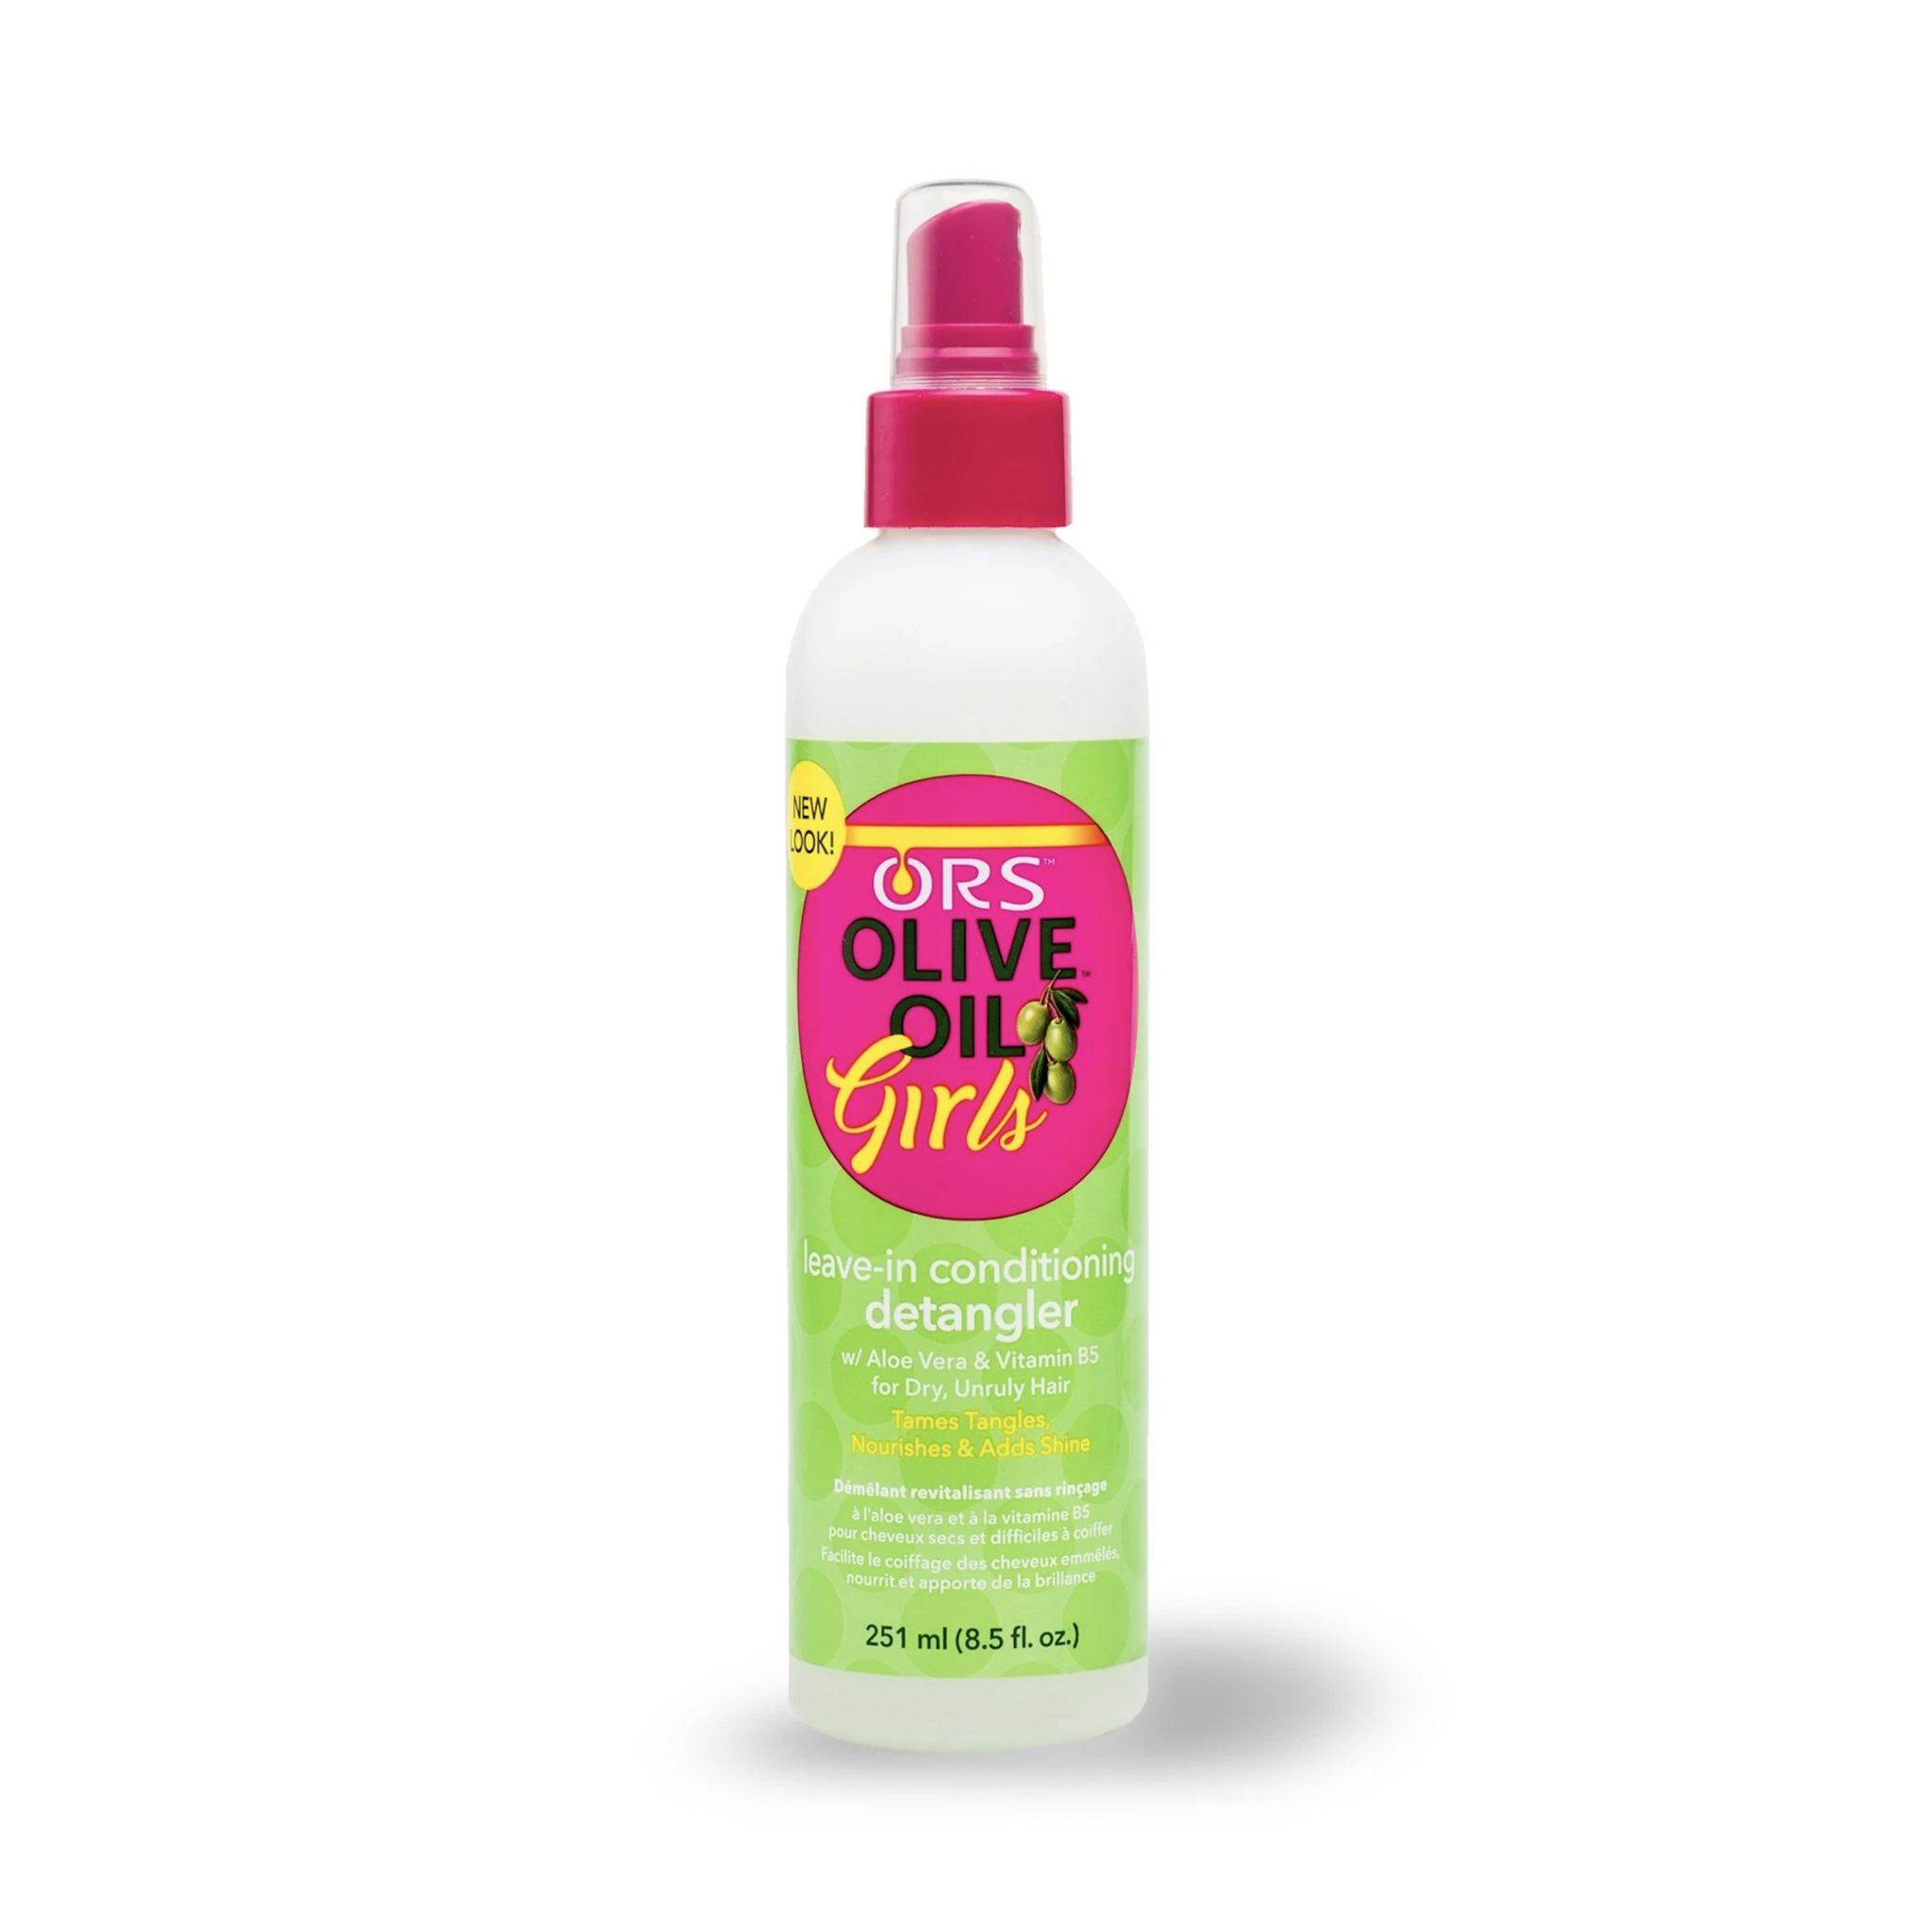 ORS  Olive Oil Girls - Leave-In Conditioning Detangler - 251 ml